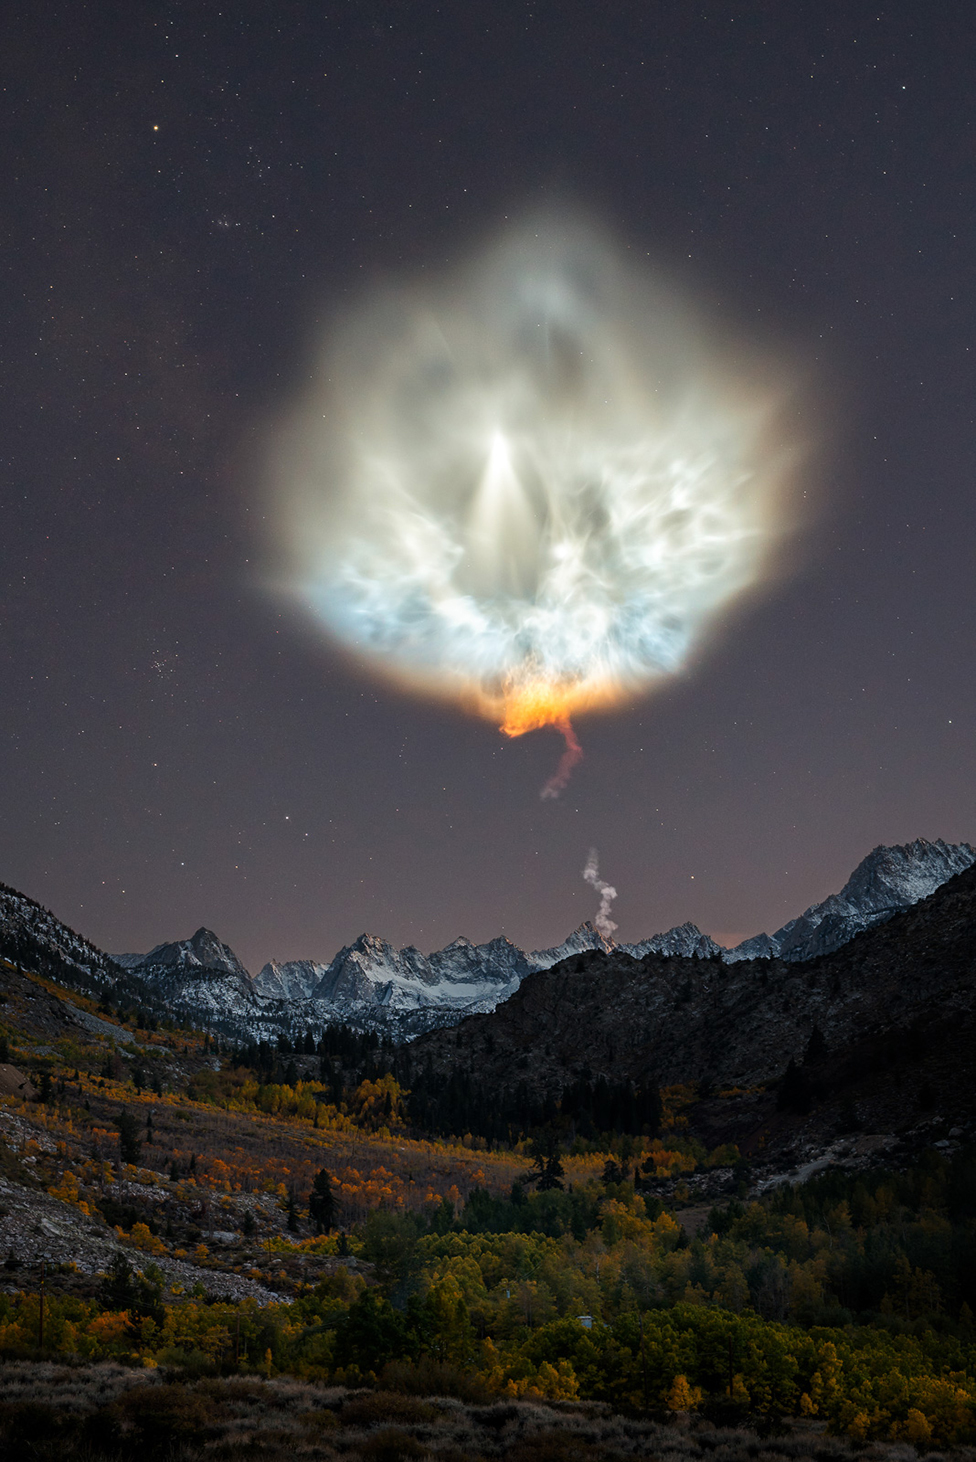 Пейзажная сцена, показывающая горы ночью с большим шлейфом выхлопных газов ракеты в небе